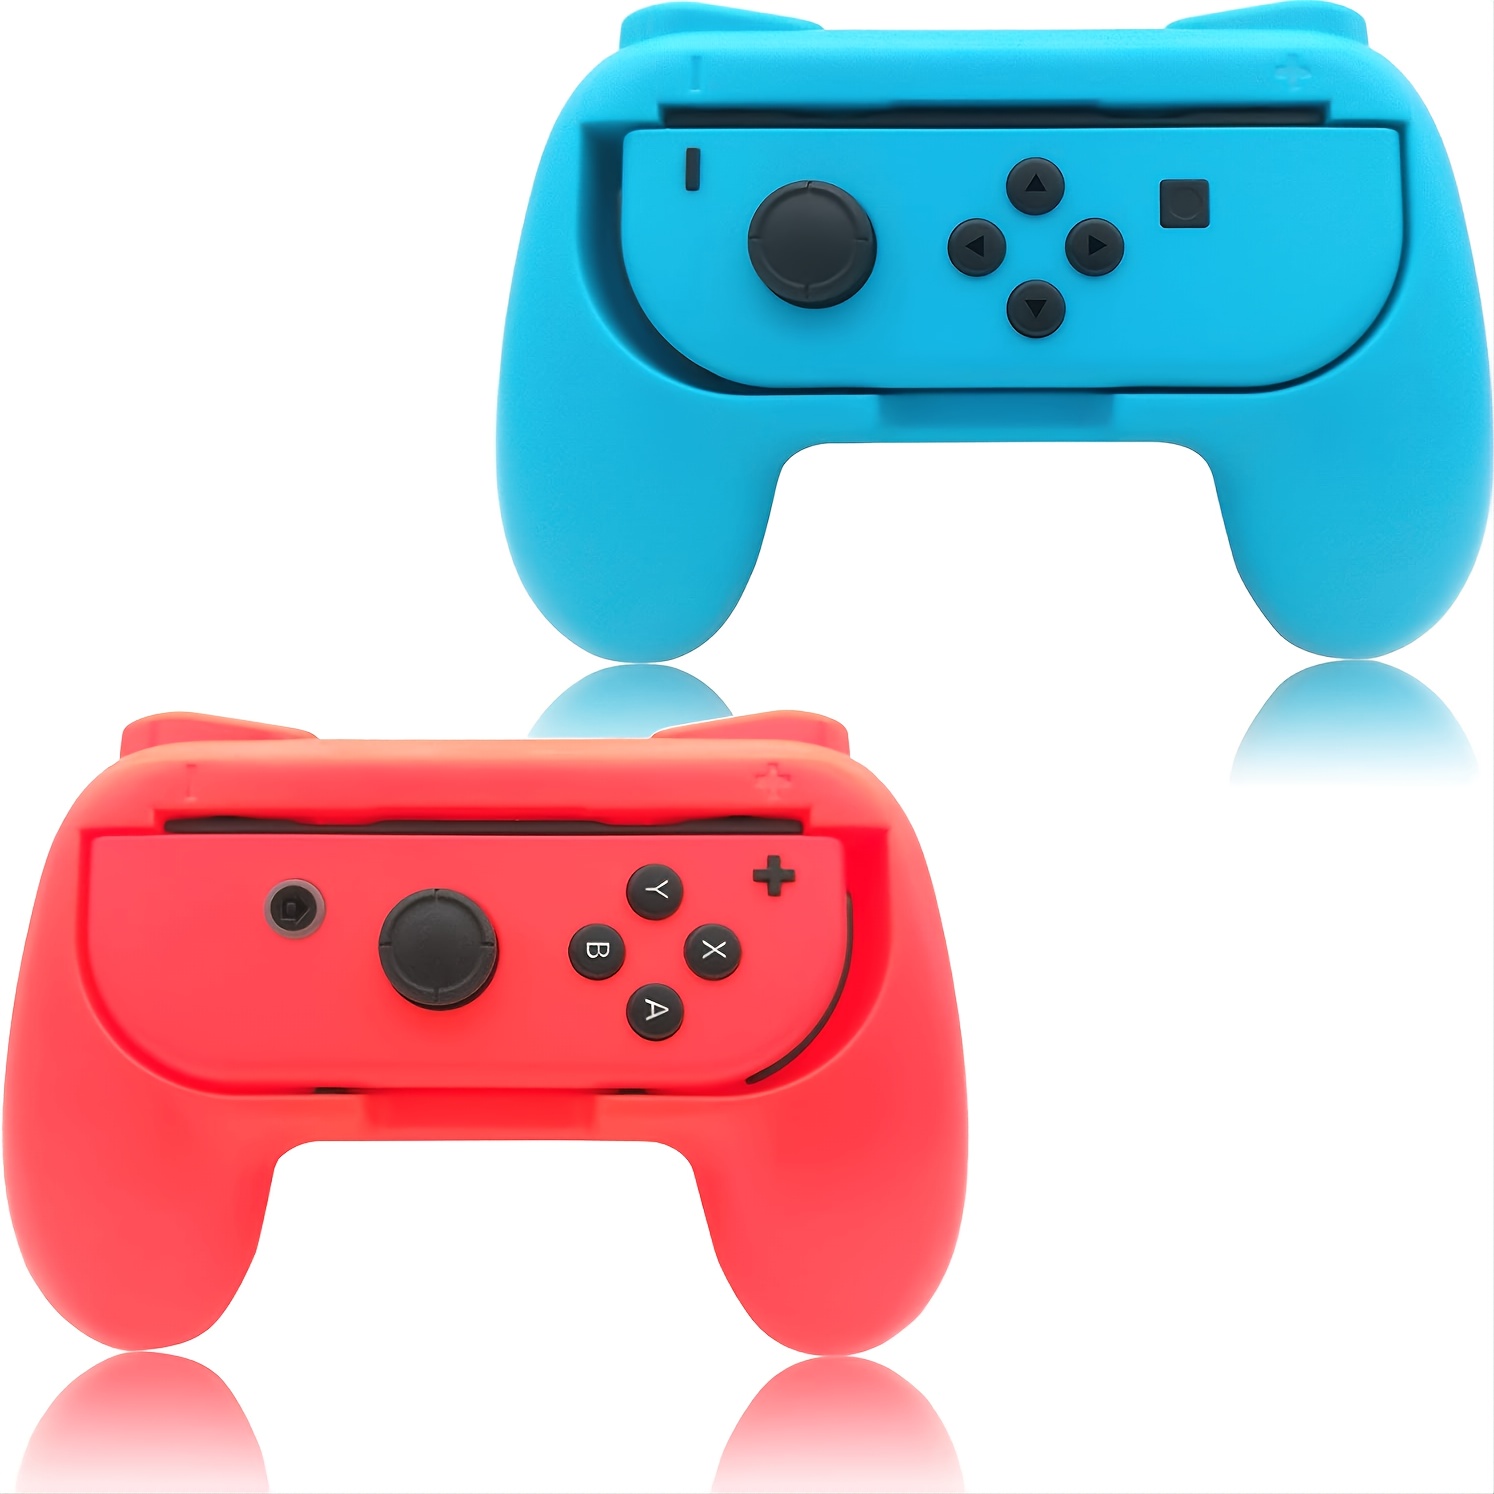 Cómo solicitar la reparación gratuita de los mandos Joy-Con de Nintendo  Switch con drifting